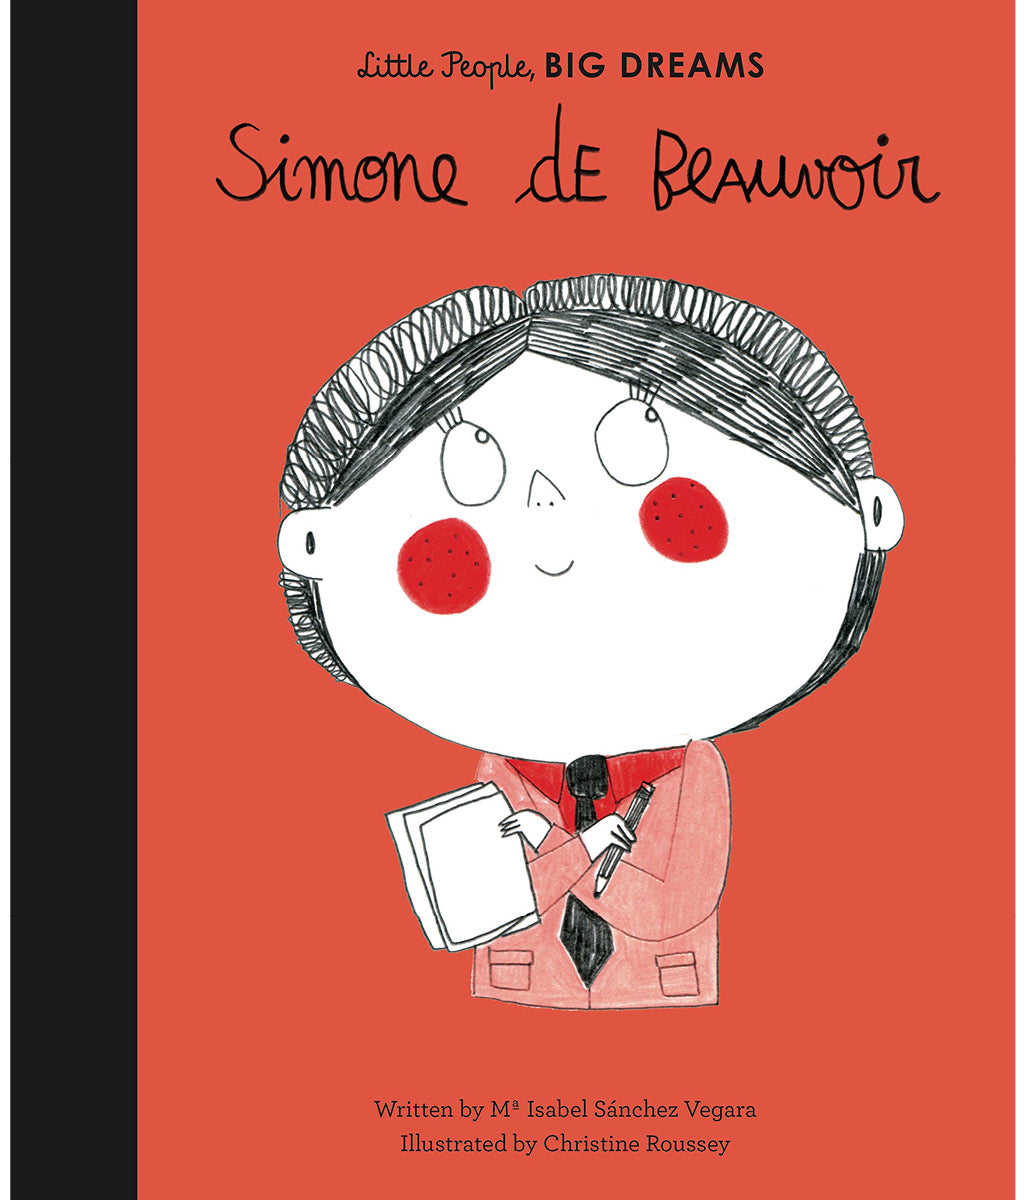 Simone de Beauvoir by Maria Isabel Sanchez Vegara